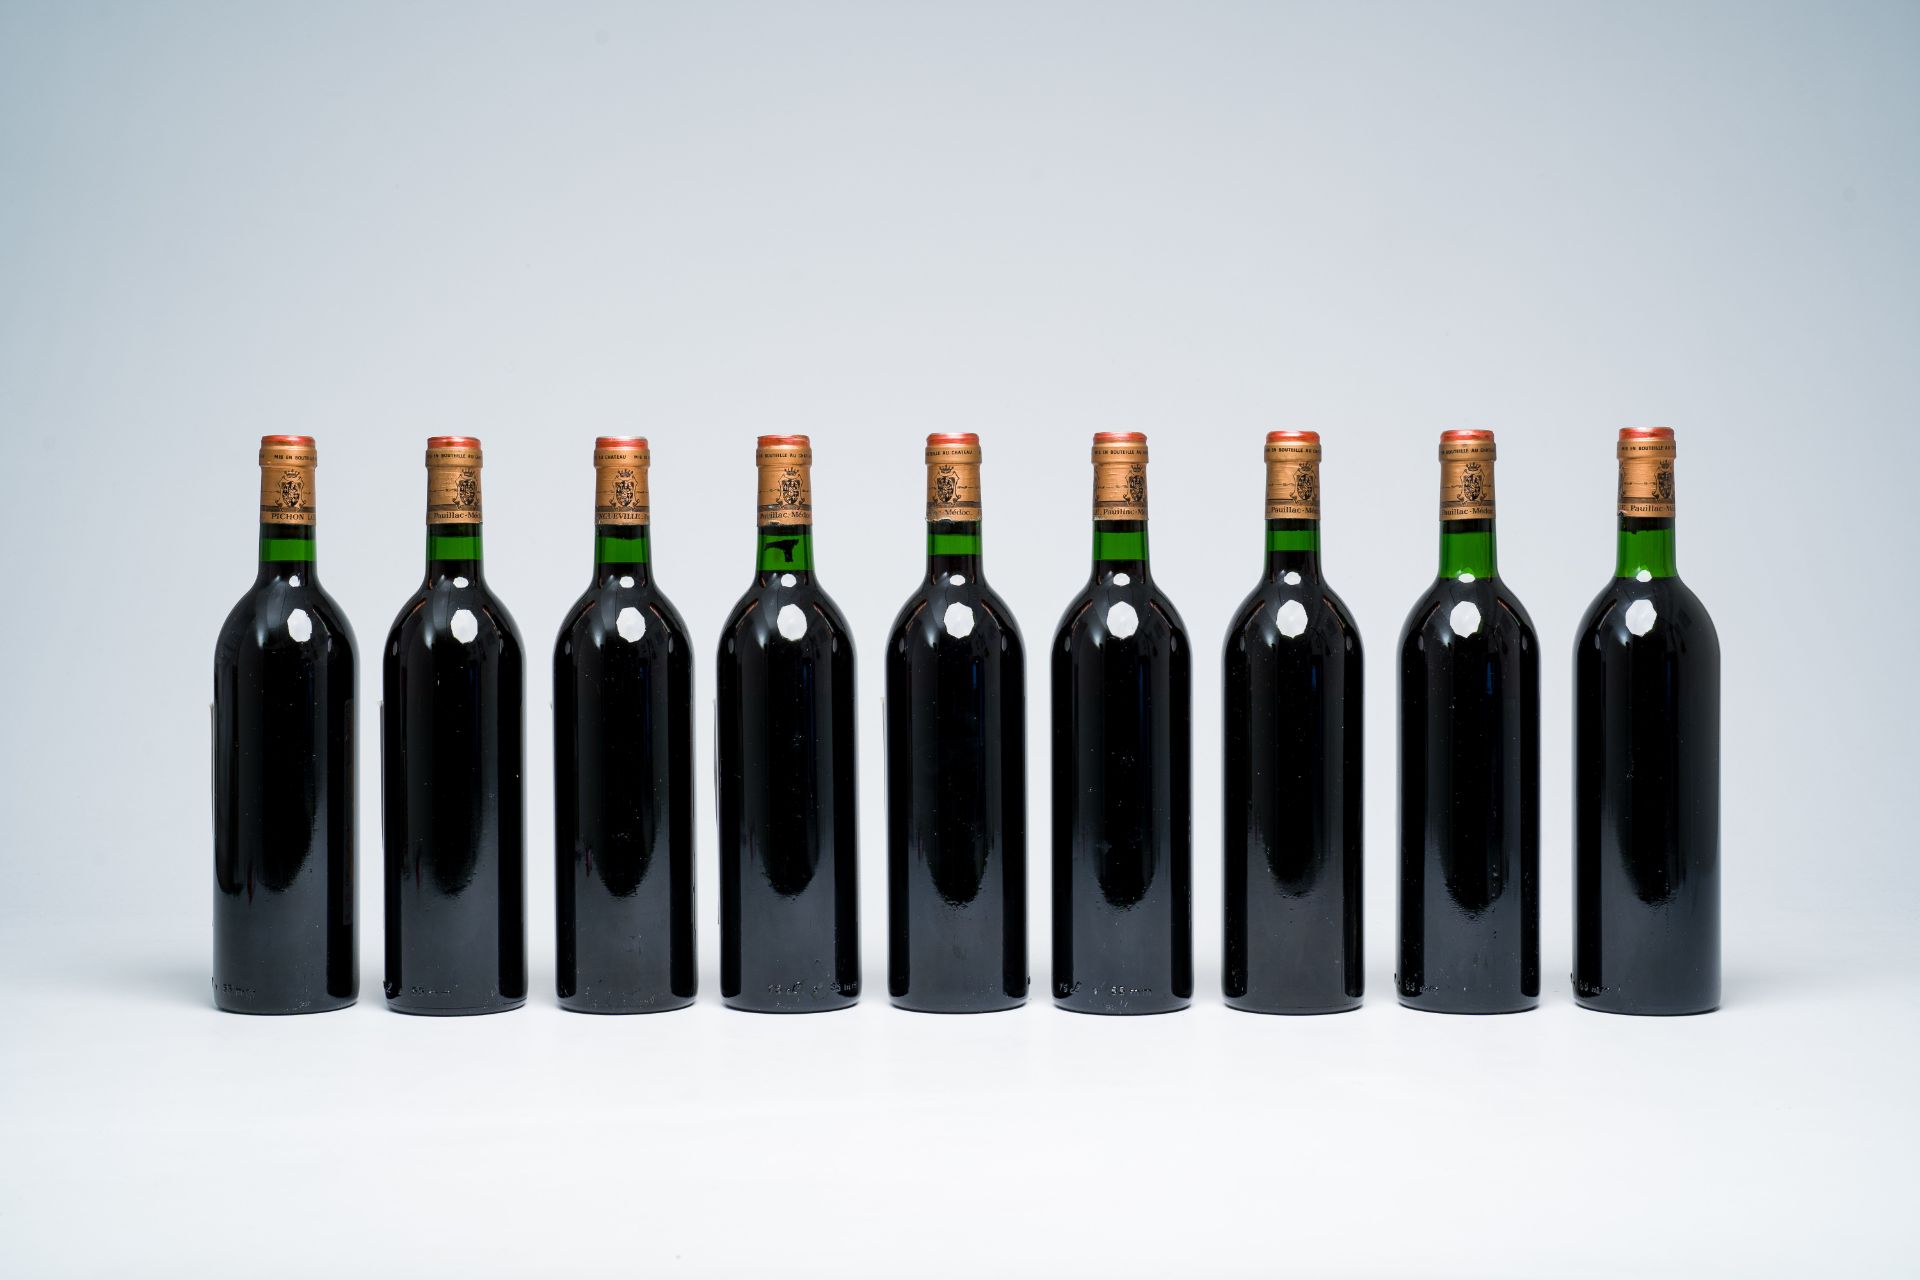 Nine bottles of Chateau Longueville, Pauillac-Medoc, Bordeaux, 1981